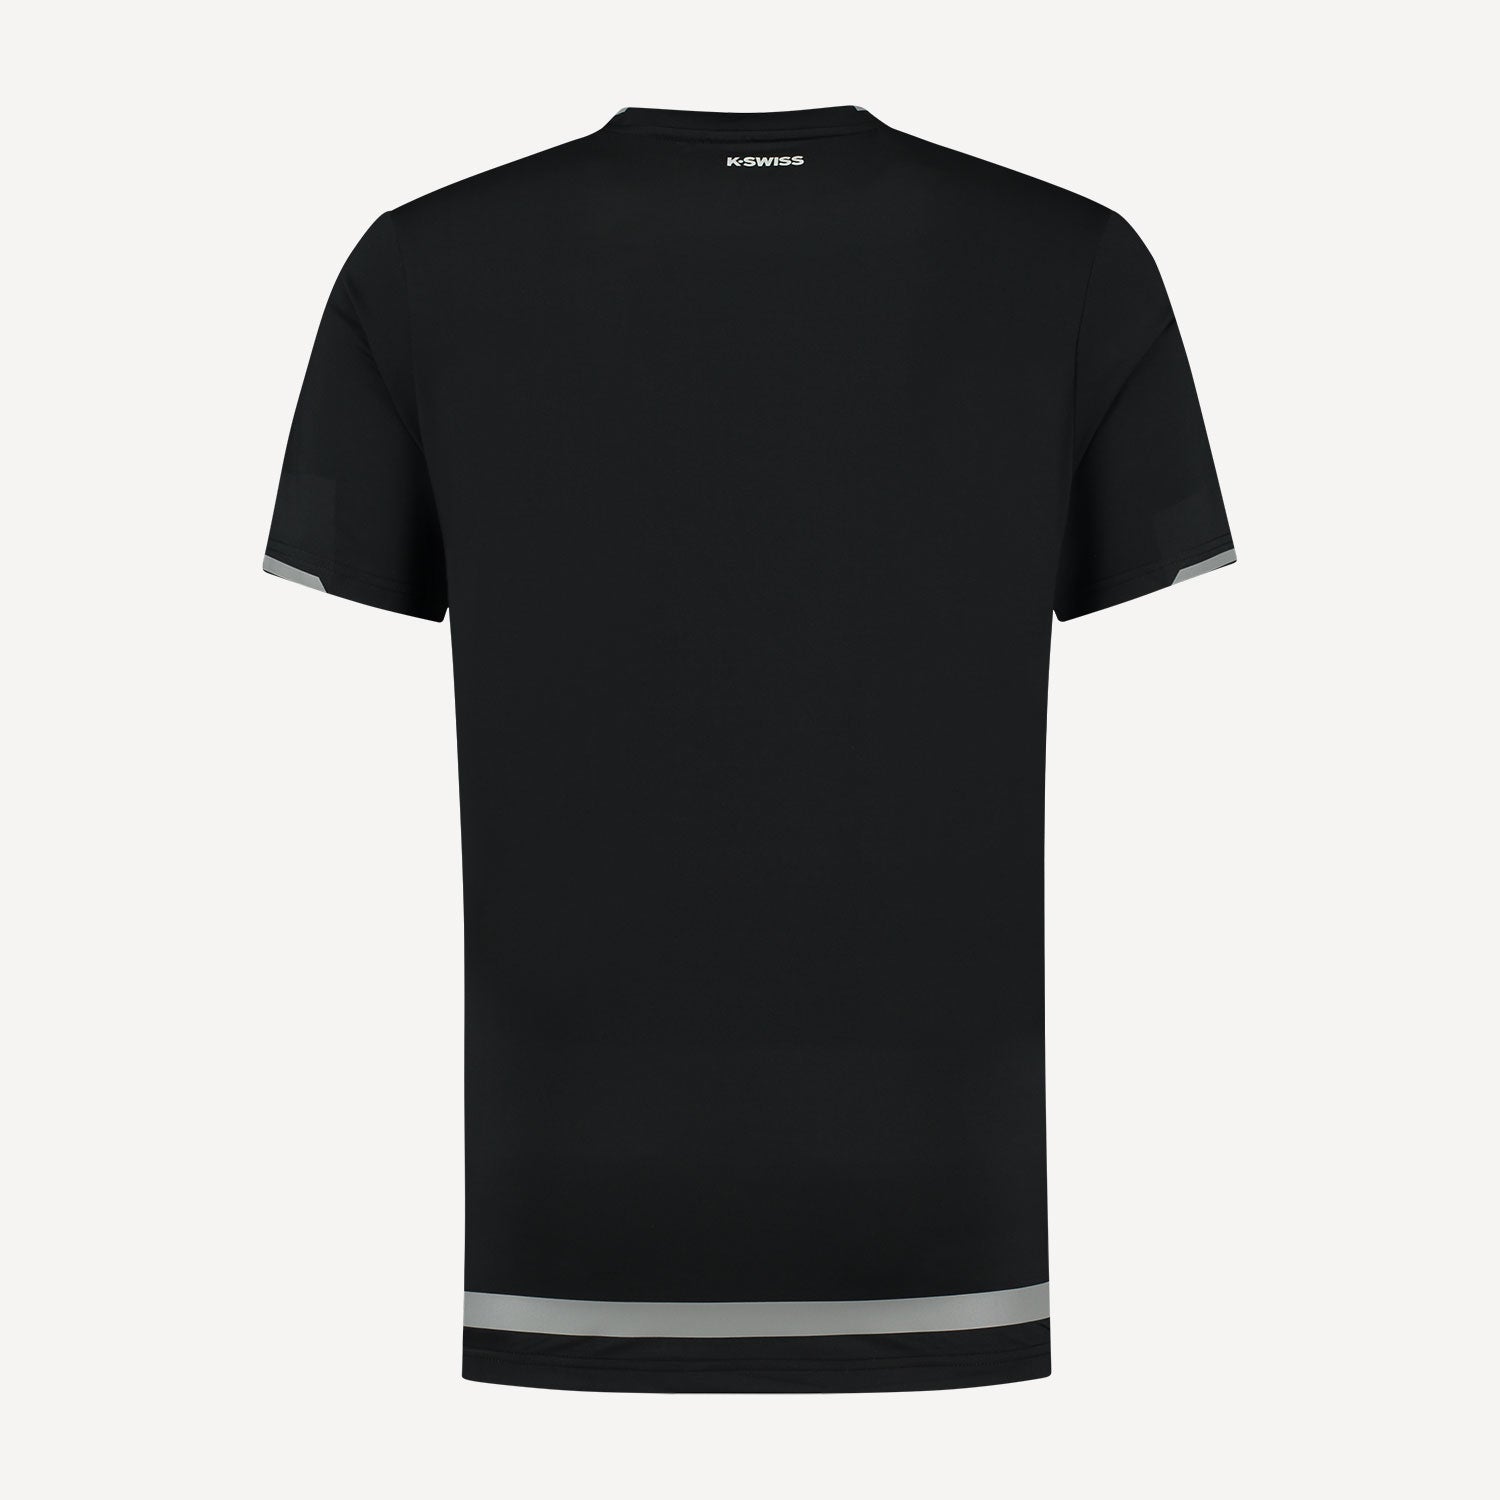 K-Swiss Hypercourt Shield Men's Tennis Shirt Black (2)